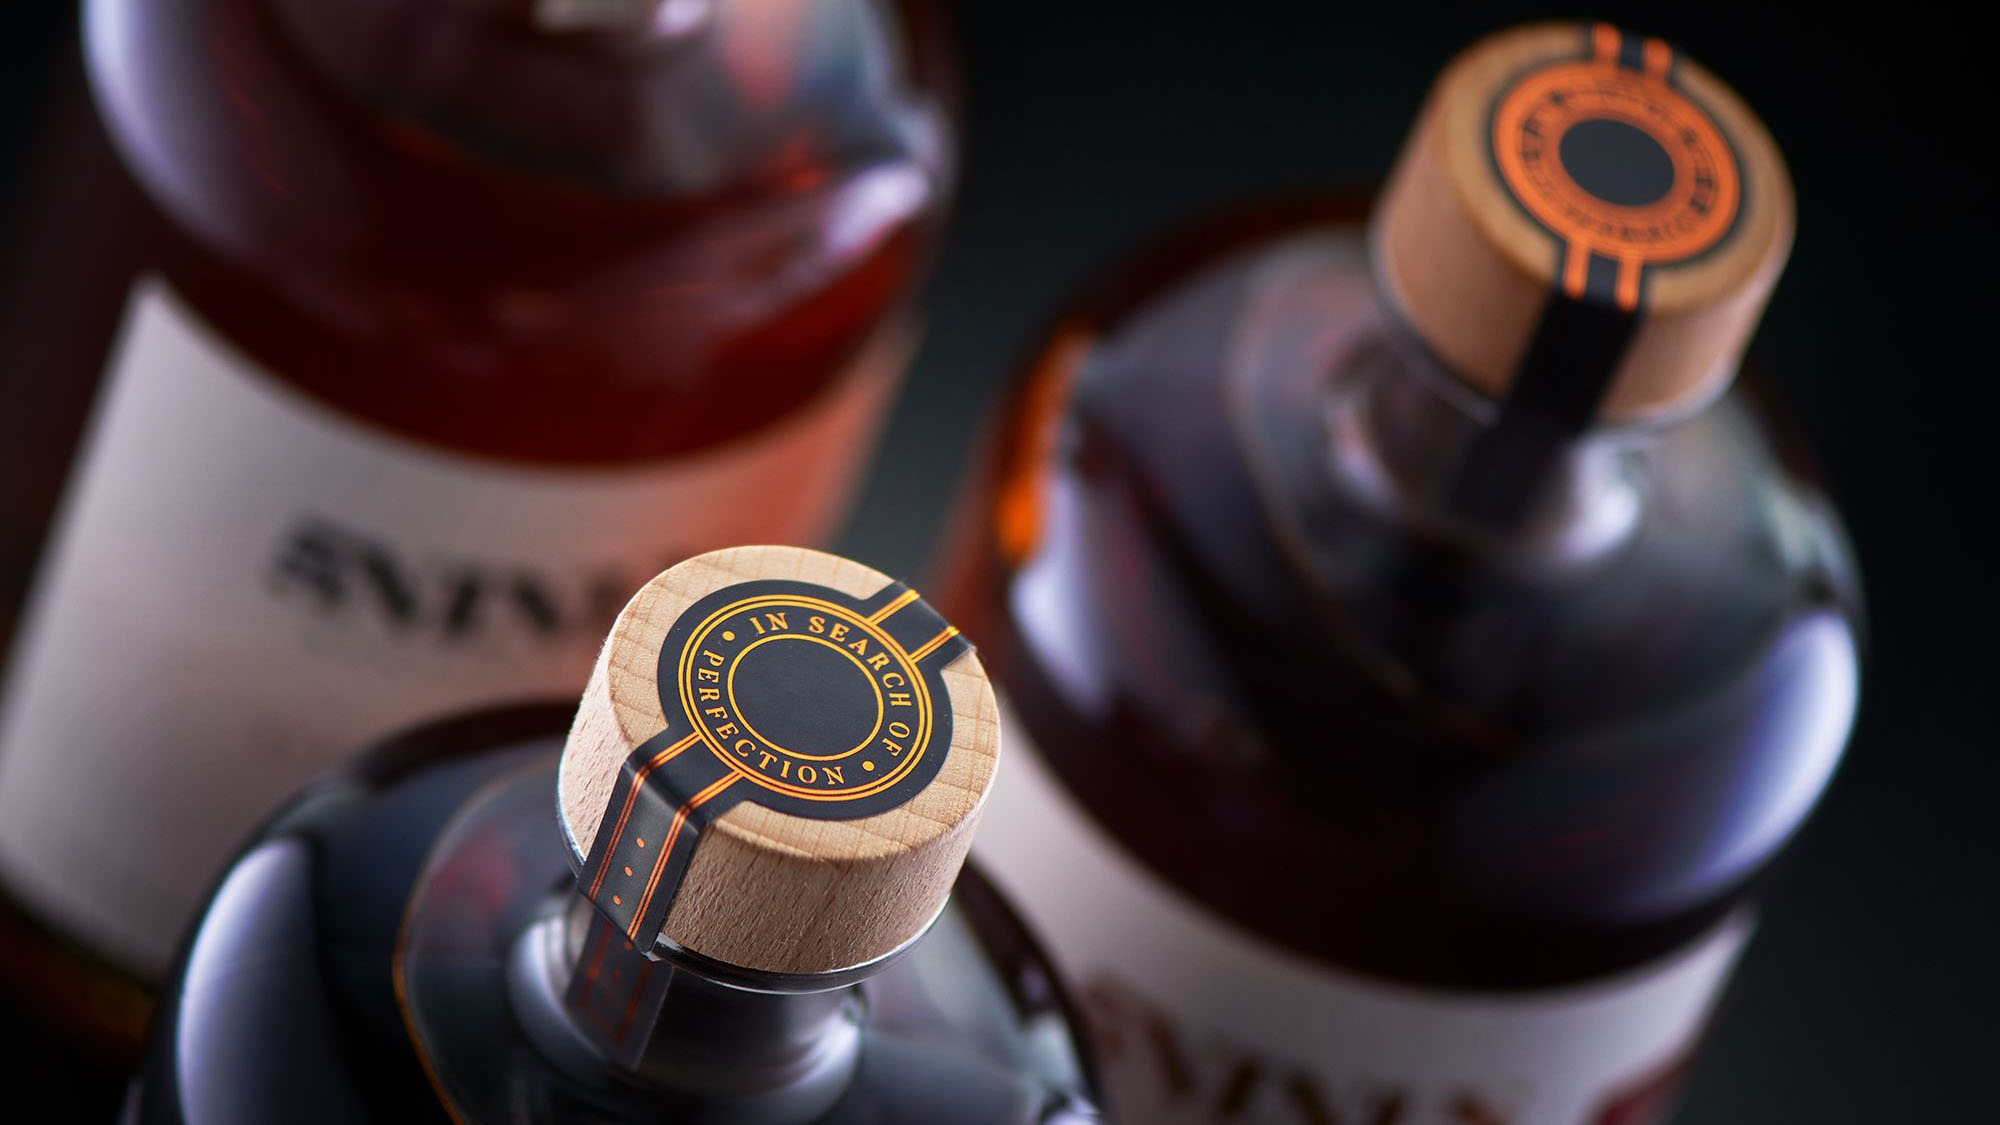 5Nines Distillery Select Single Cask Whiskies